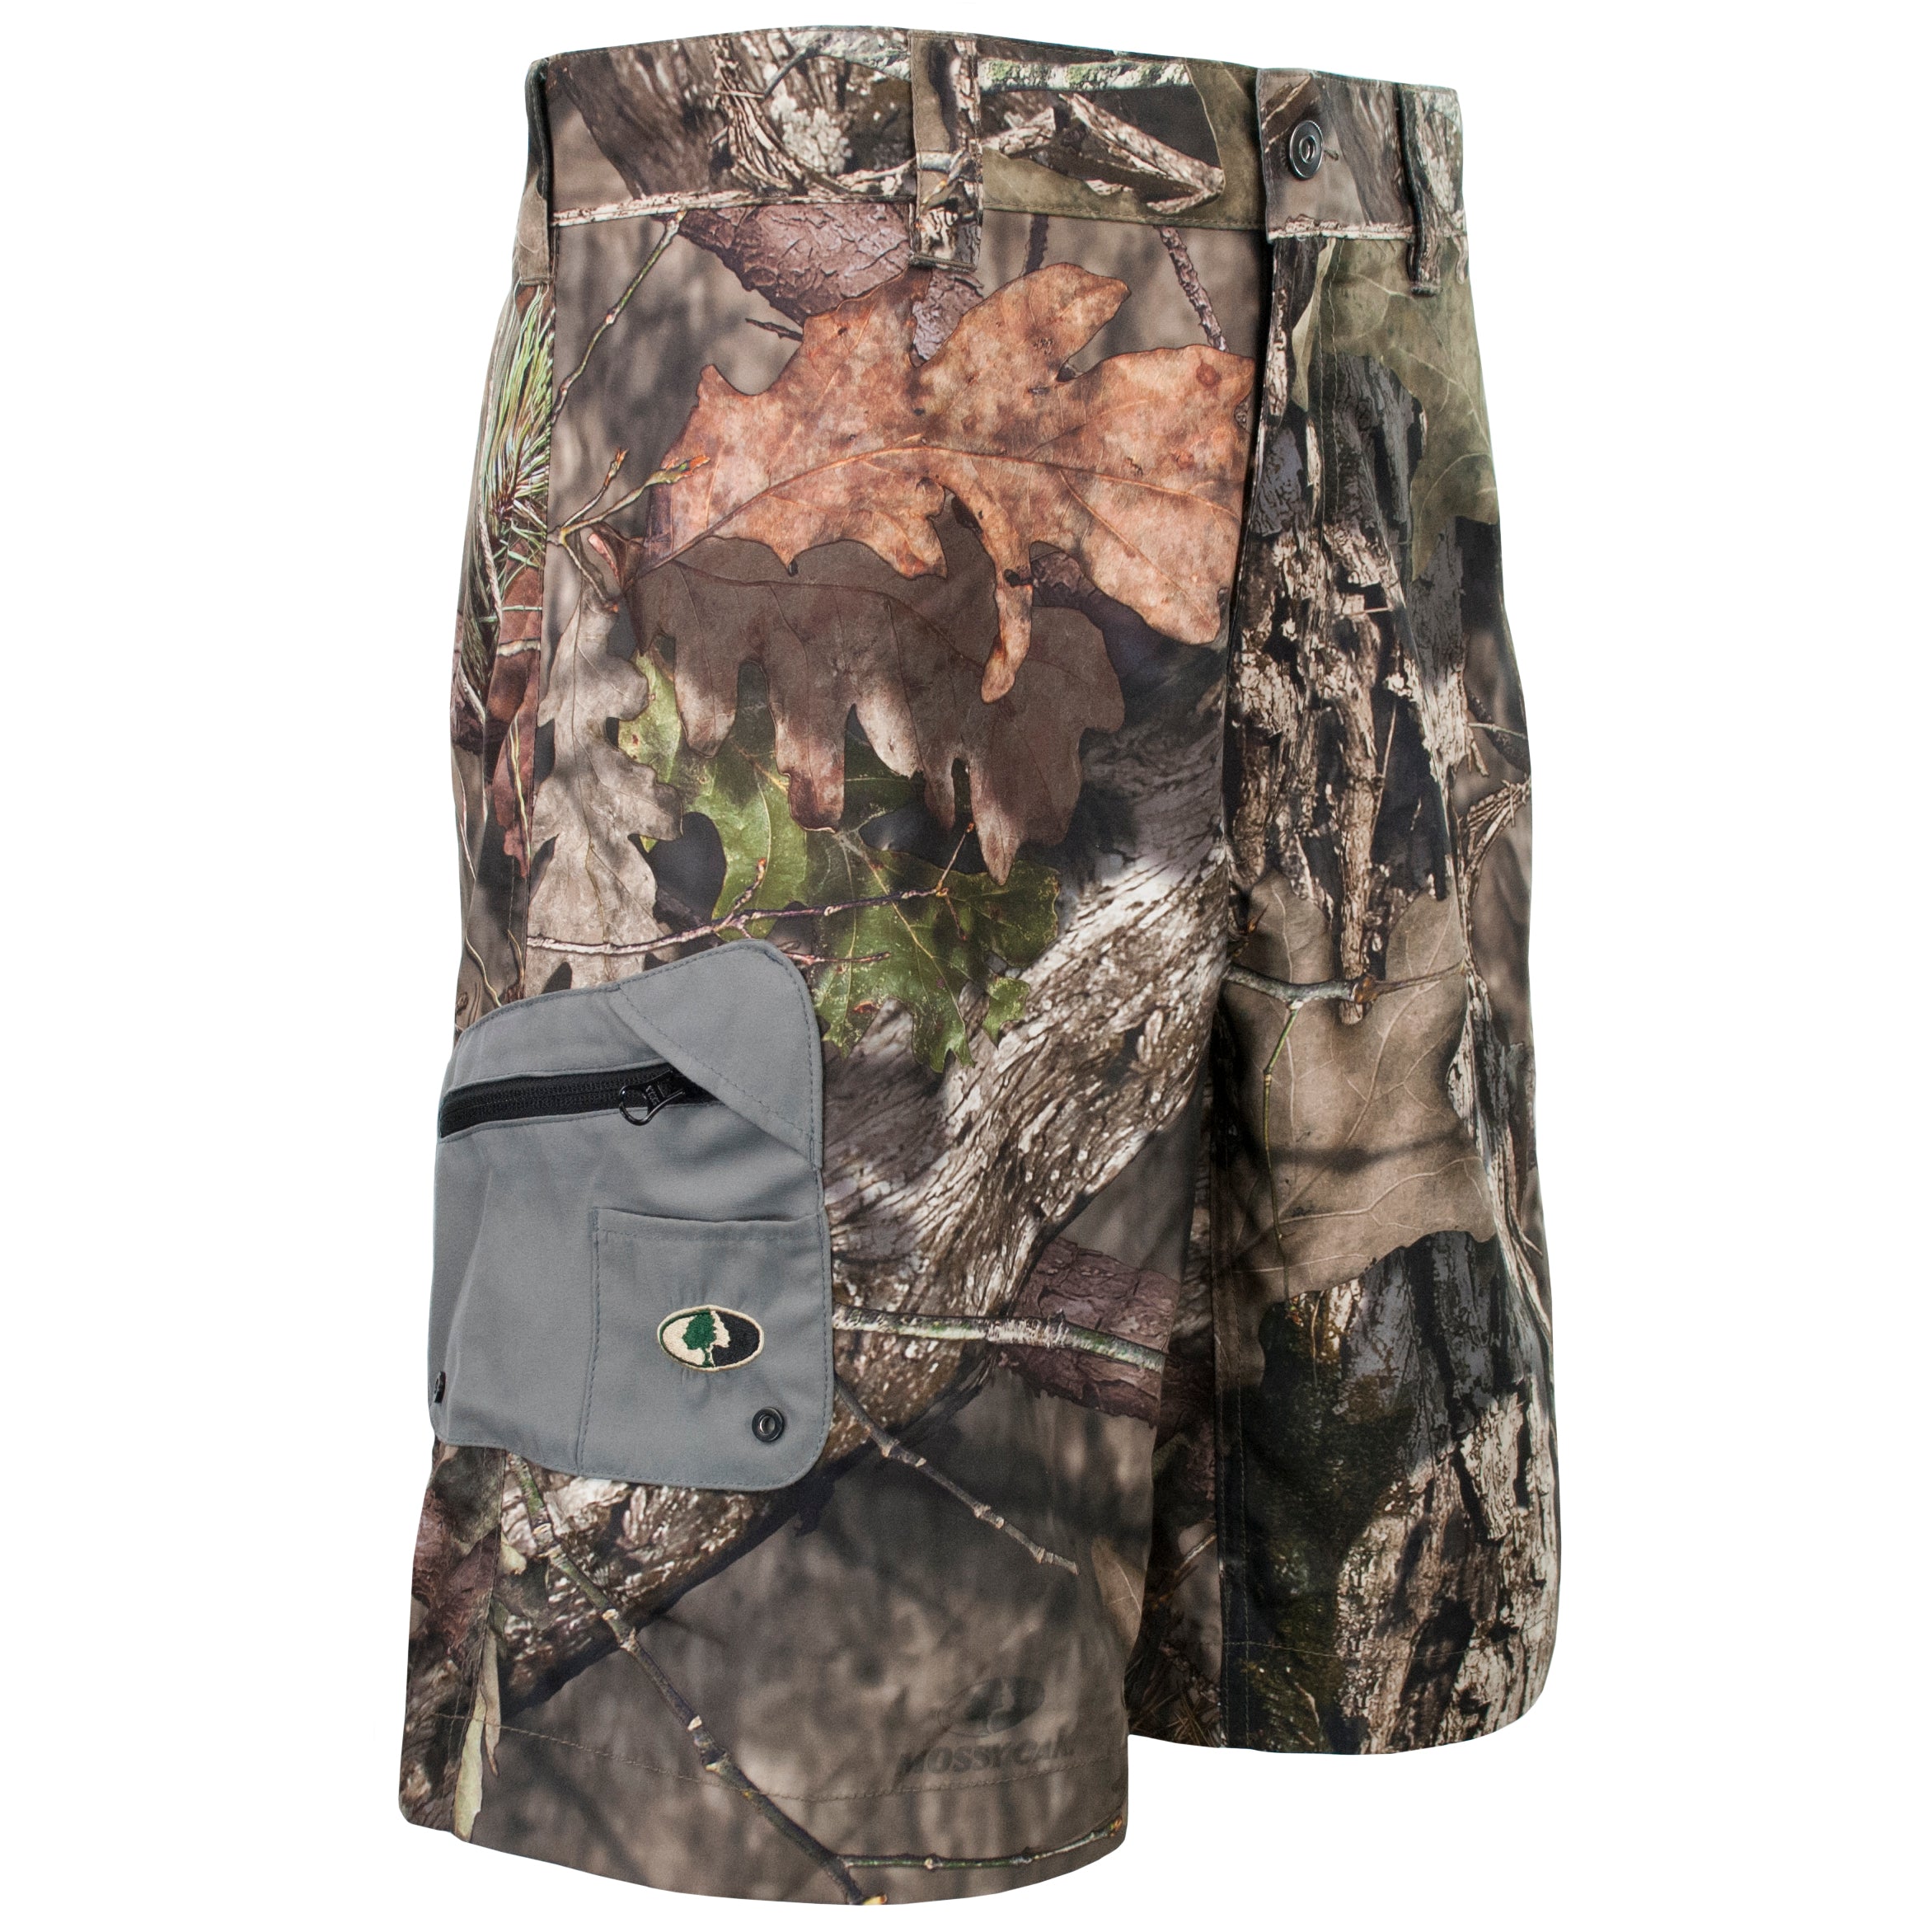 Mossy Oak Camo Hybrid Shorts – The Mossy Oak Store